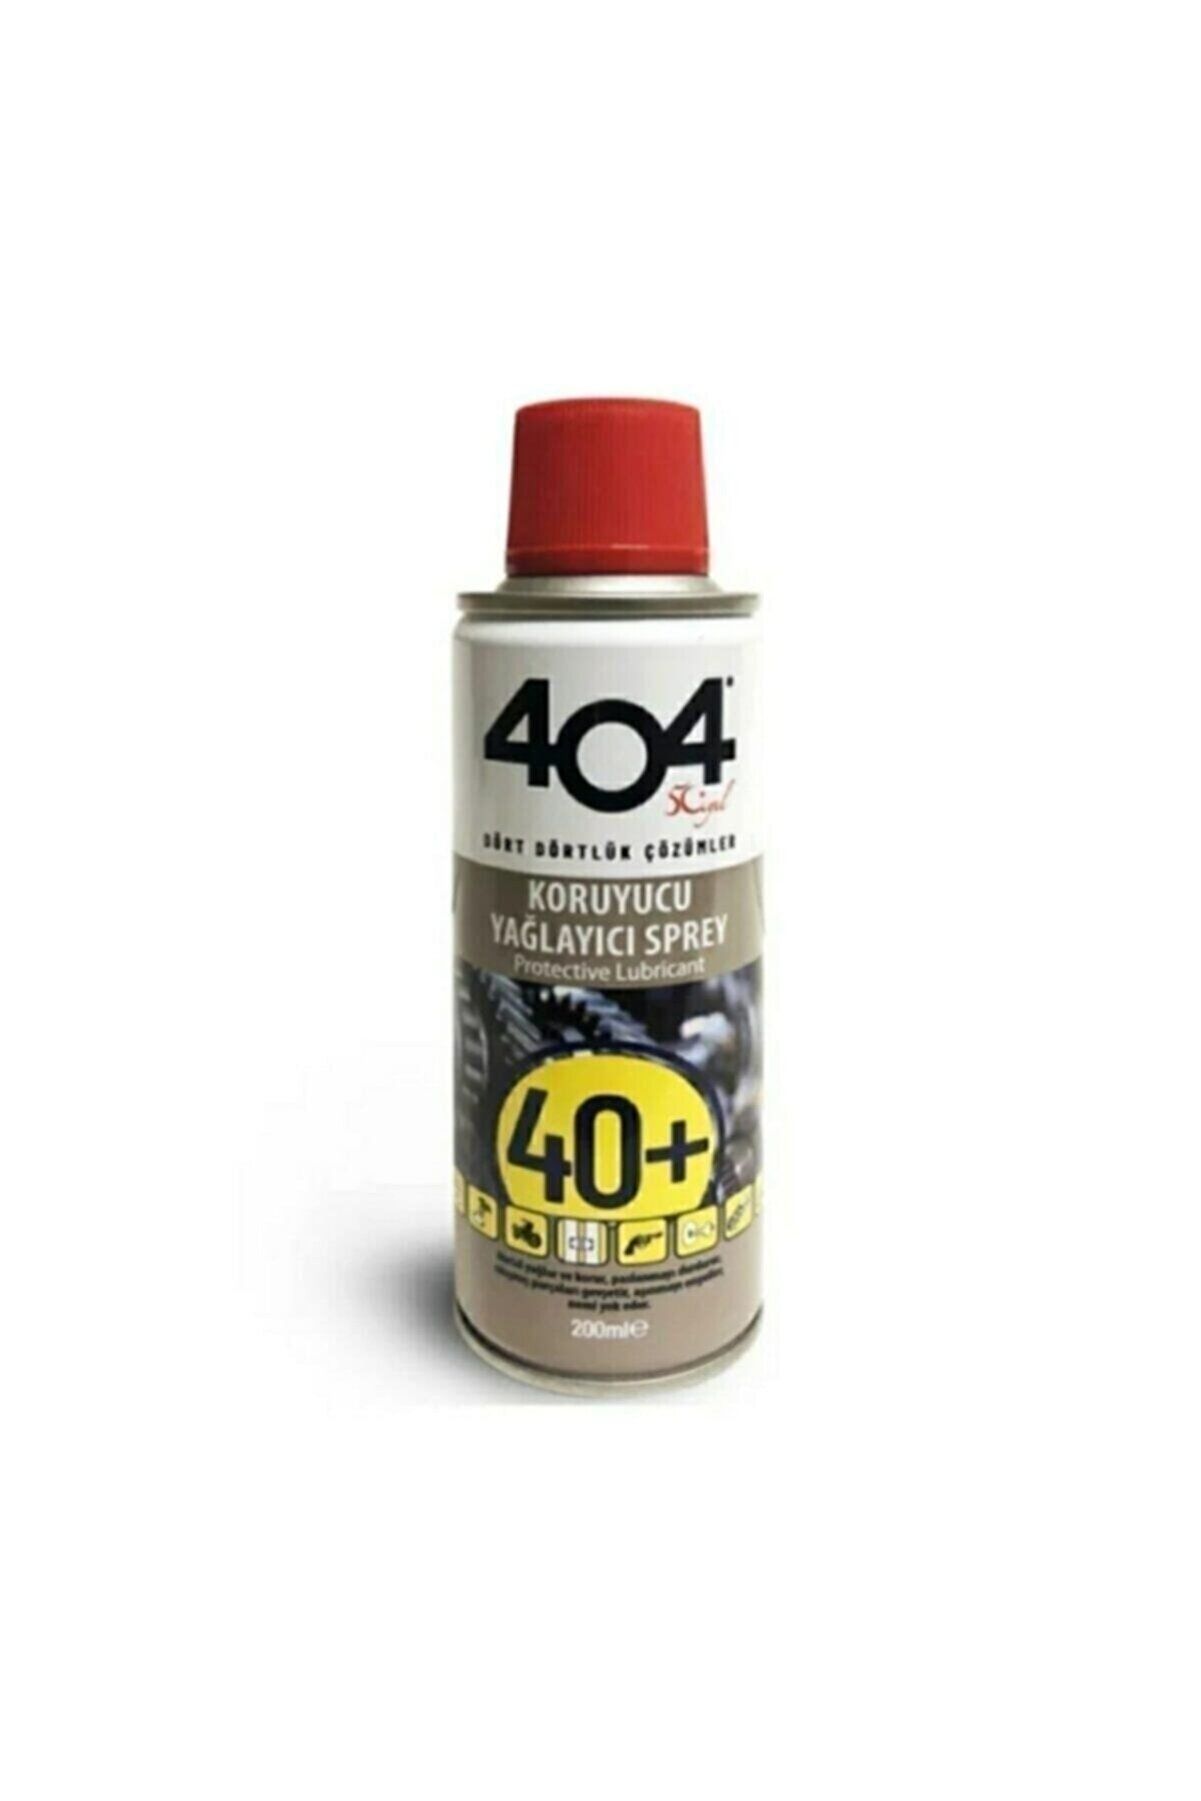 404 40+ Kimya Koruyucu Yağlayıcı 200 ml